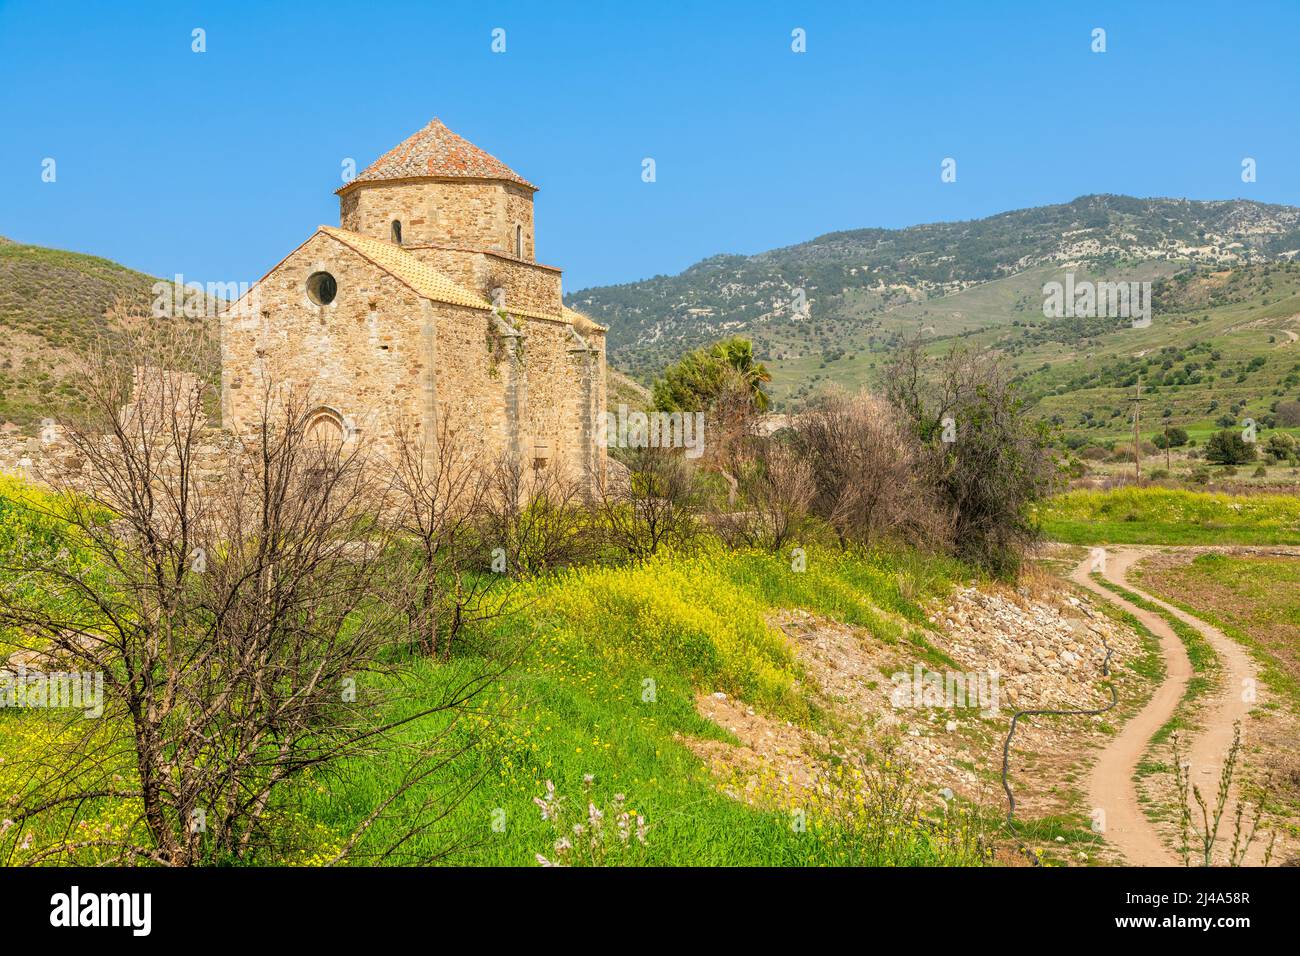 Ruinas de Panagia tou Sinti ortodox Monasterio con templo en el centro, Troodos, Chipre Foto de stock